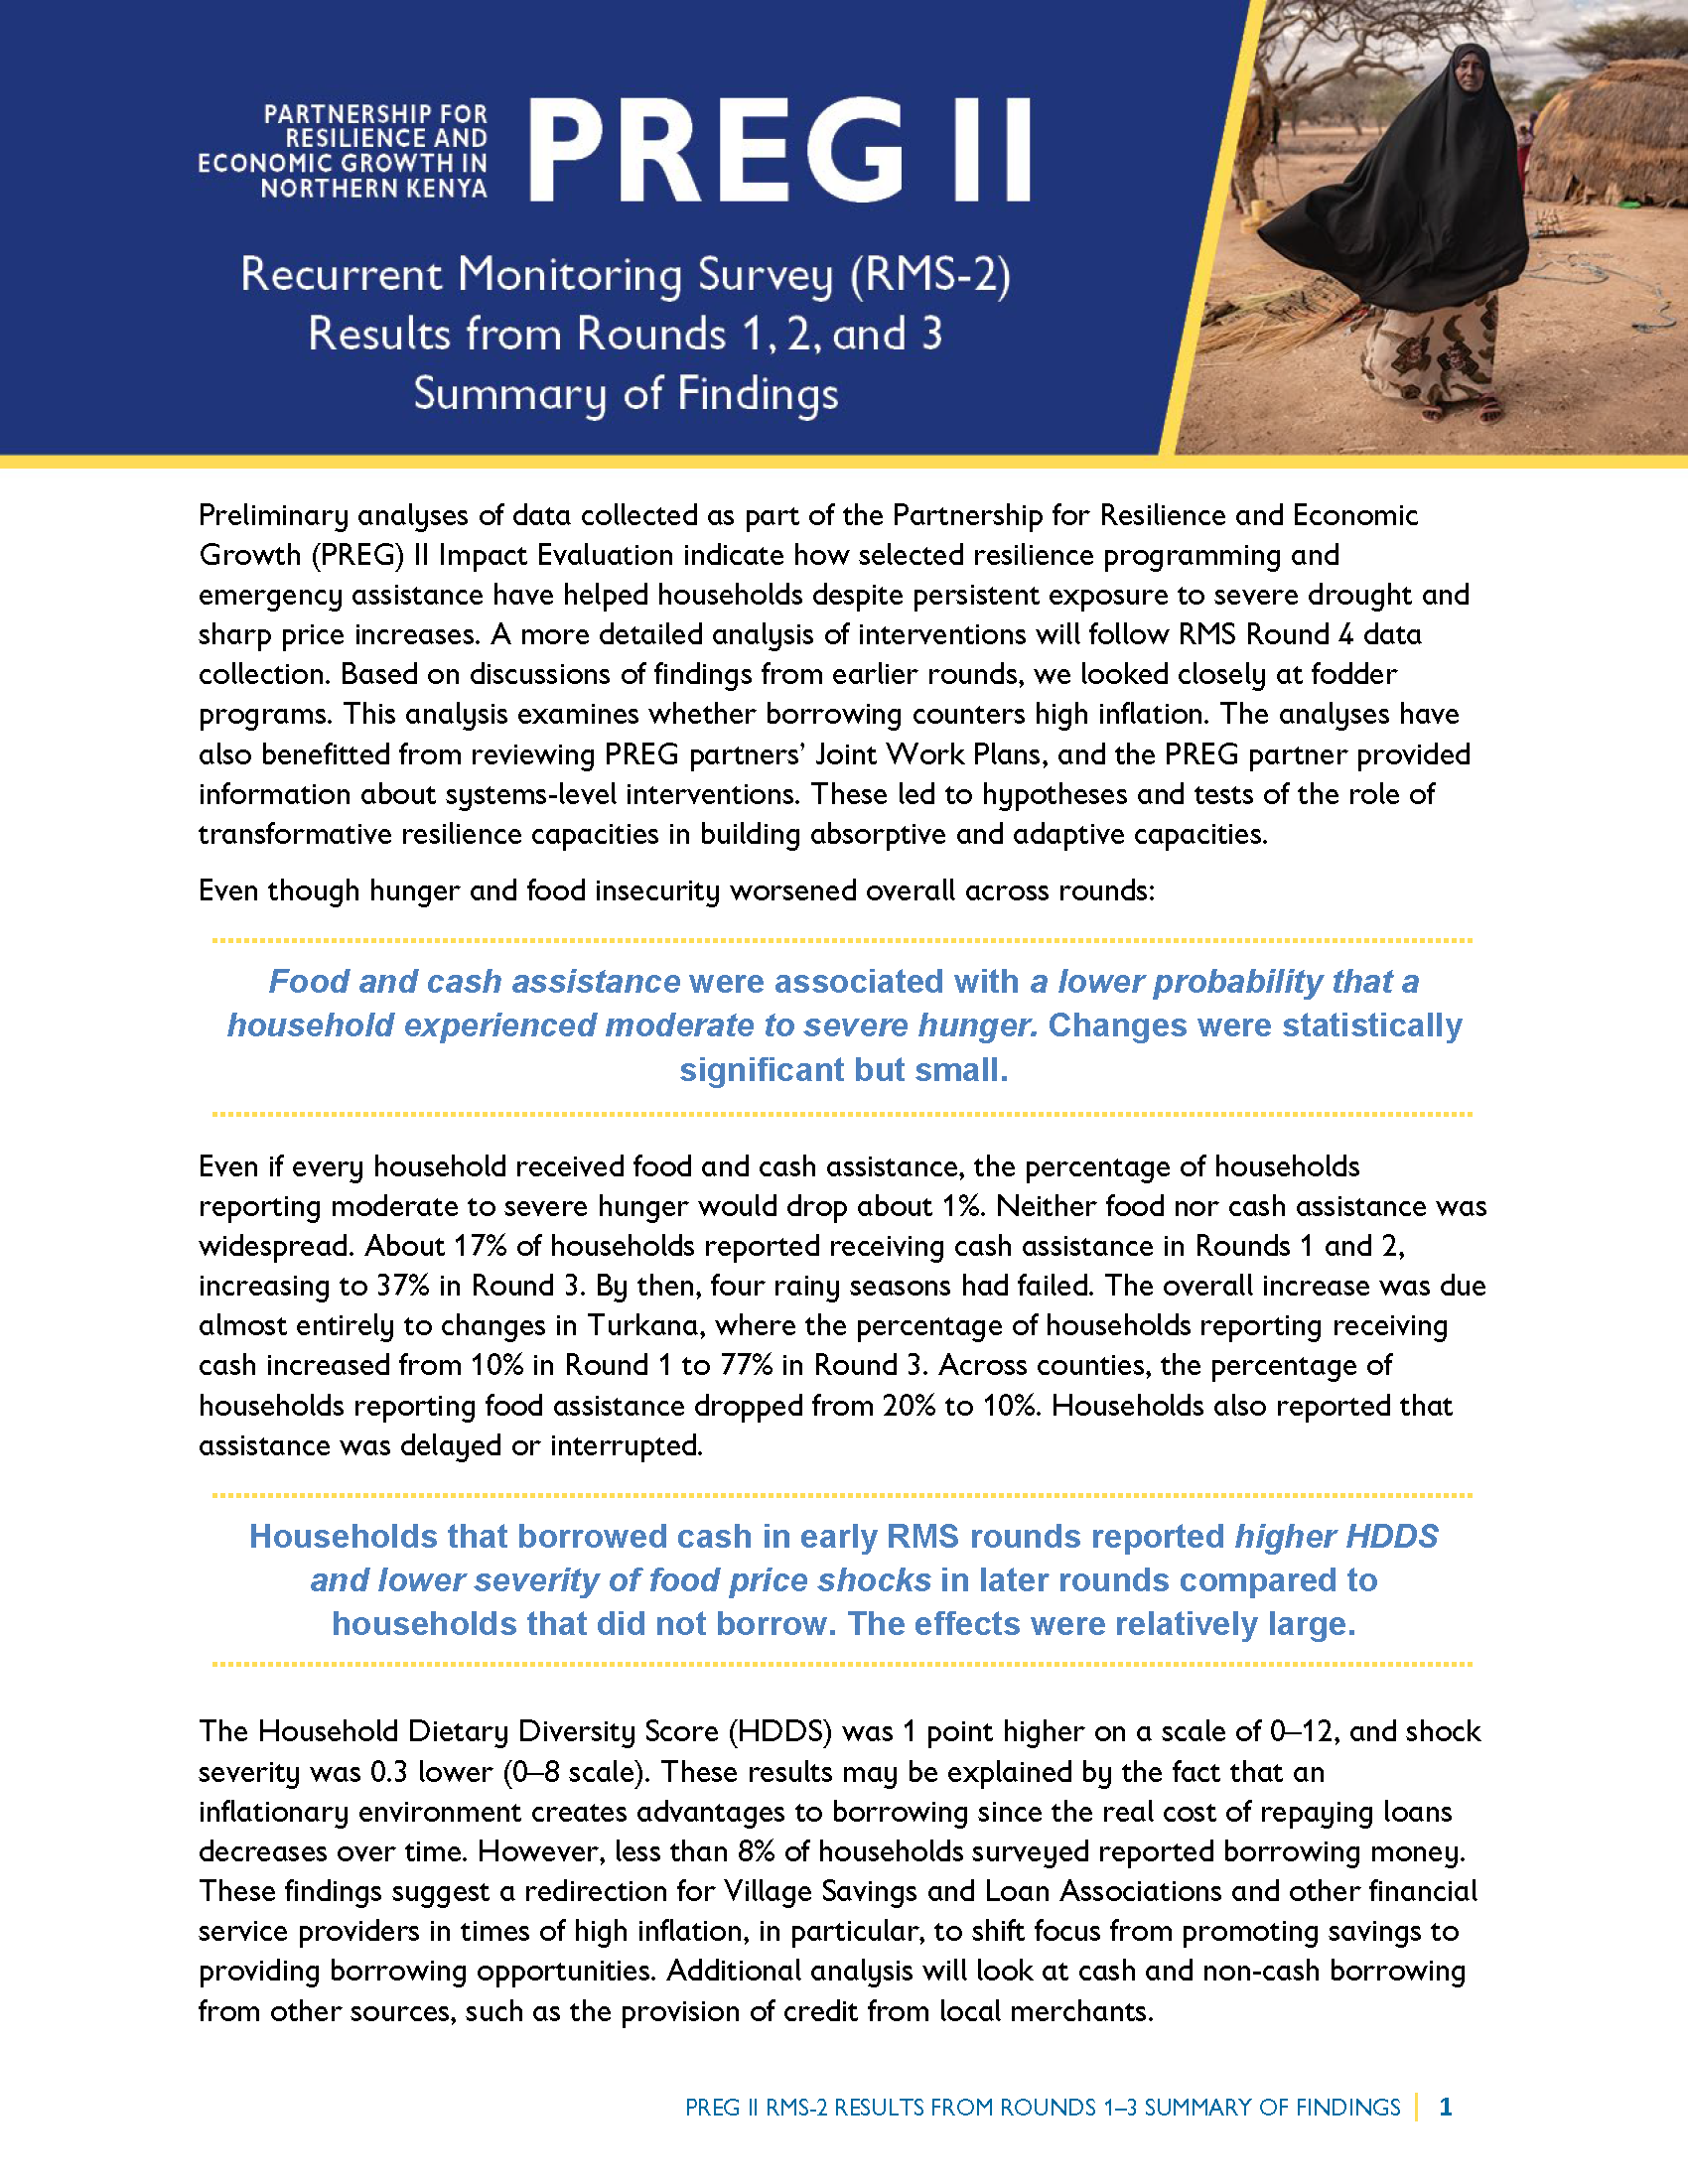 Page de couverture du rapport - Partenariat pour la résilience et la croissance économique dans le nord du Kenya : PREG II Recurrent Monitoring Survey (RMS-2) Results from Rounds 1, 2, and 3 - Summary of Findings